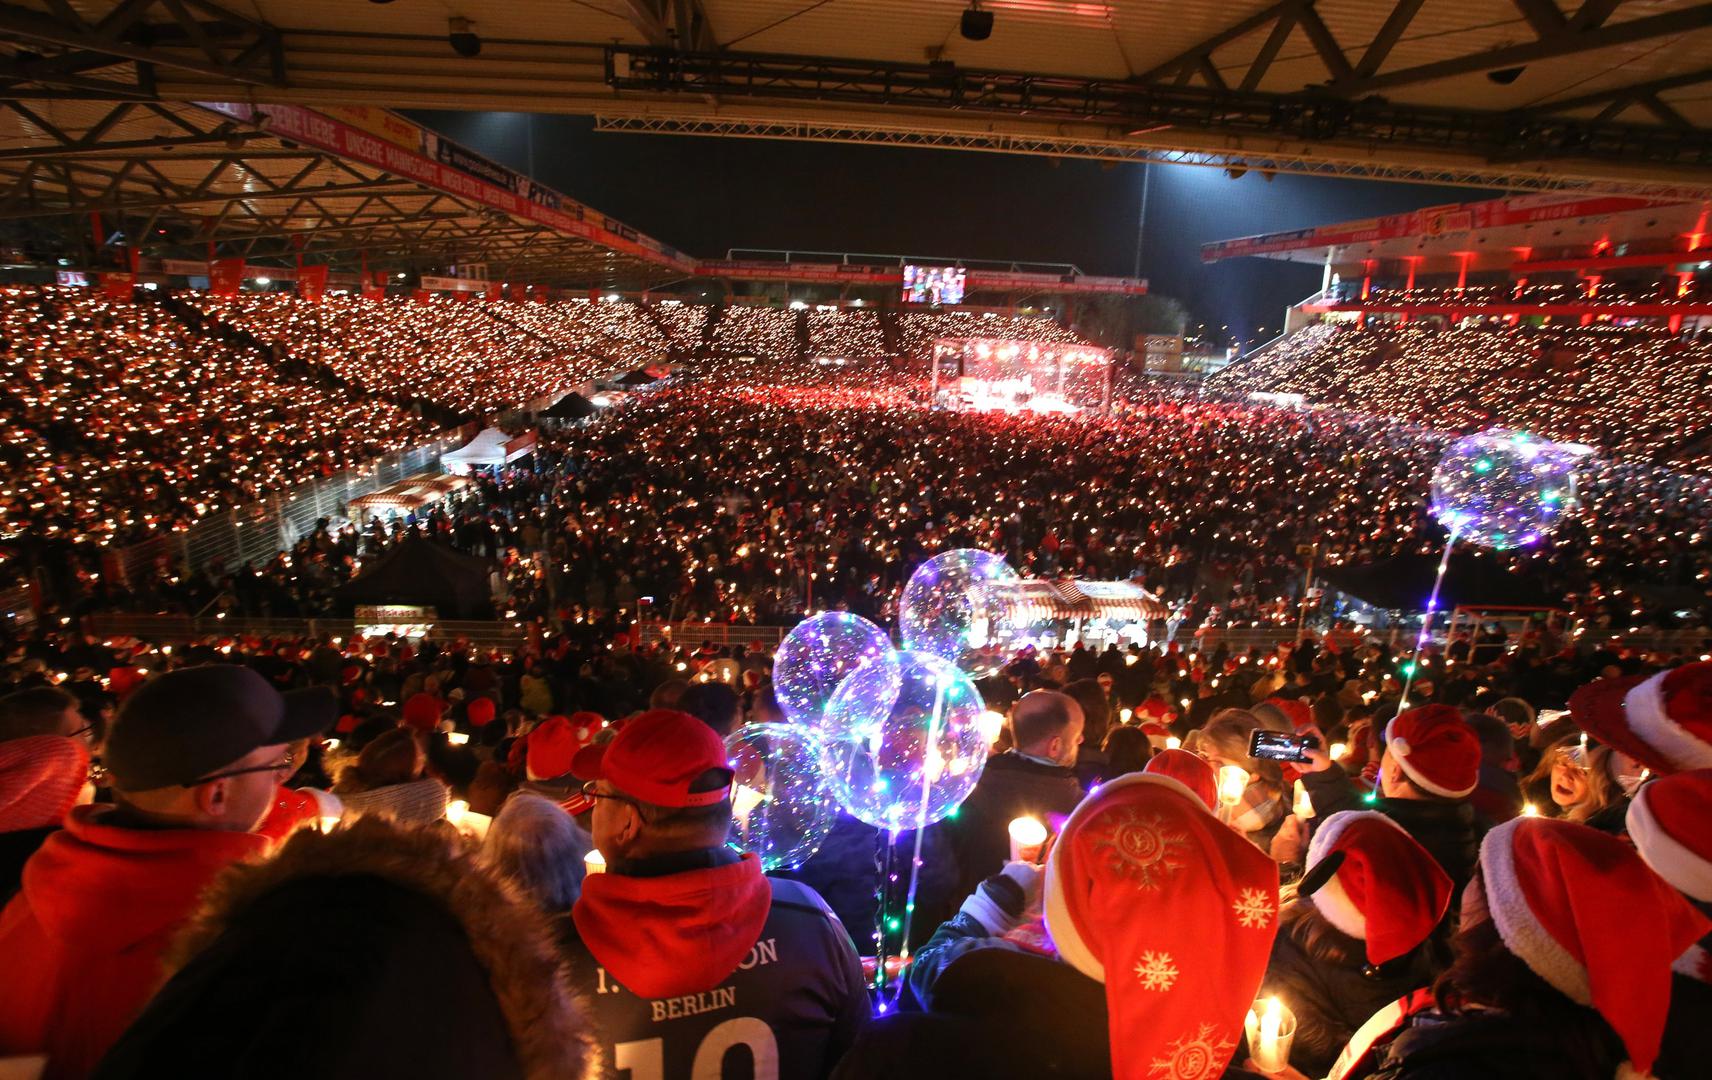 Gotovo 30.000 navijača tog njemačkog drugoligaša se okupilo na stadionu i pjevalo božićne pjesme.

